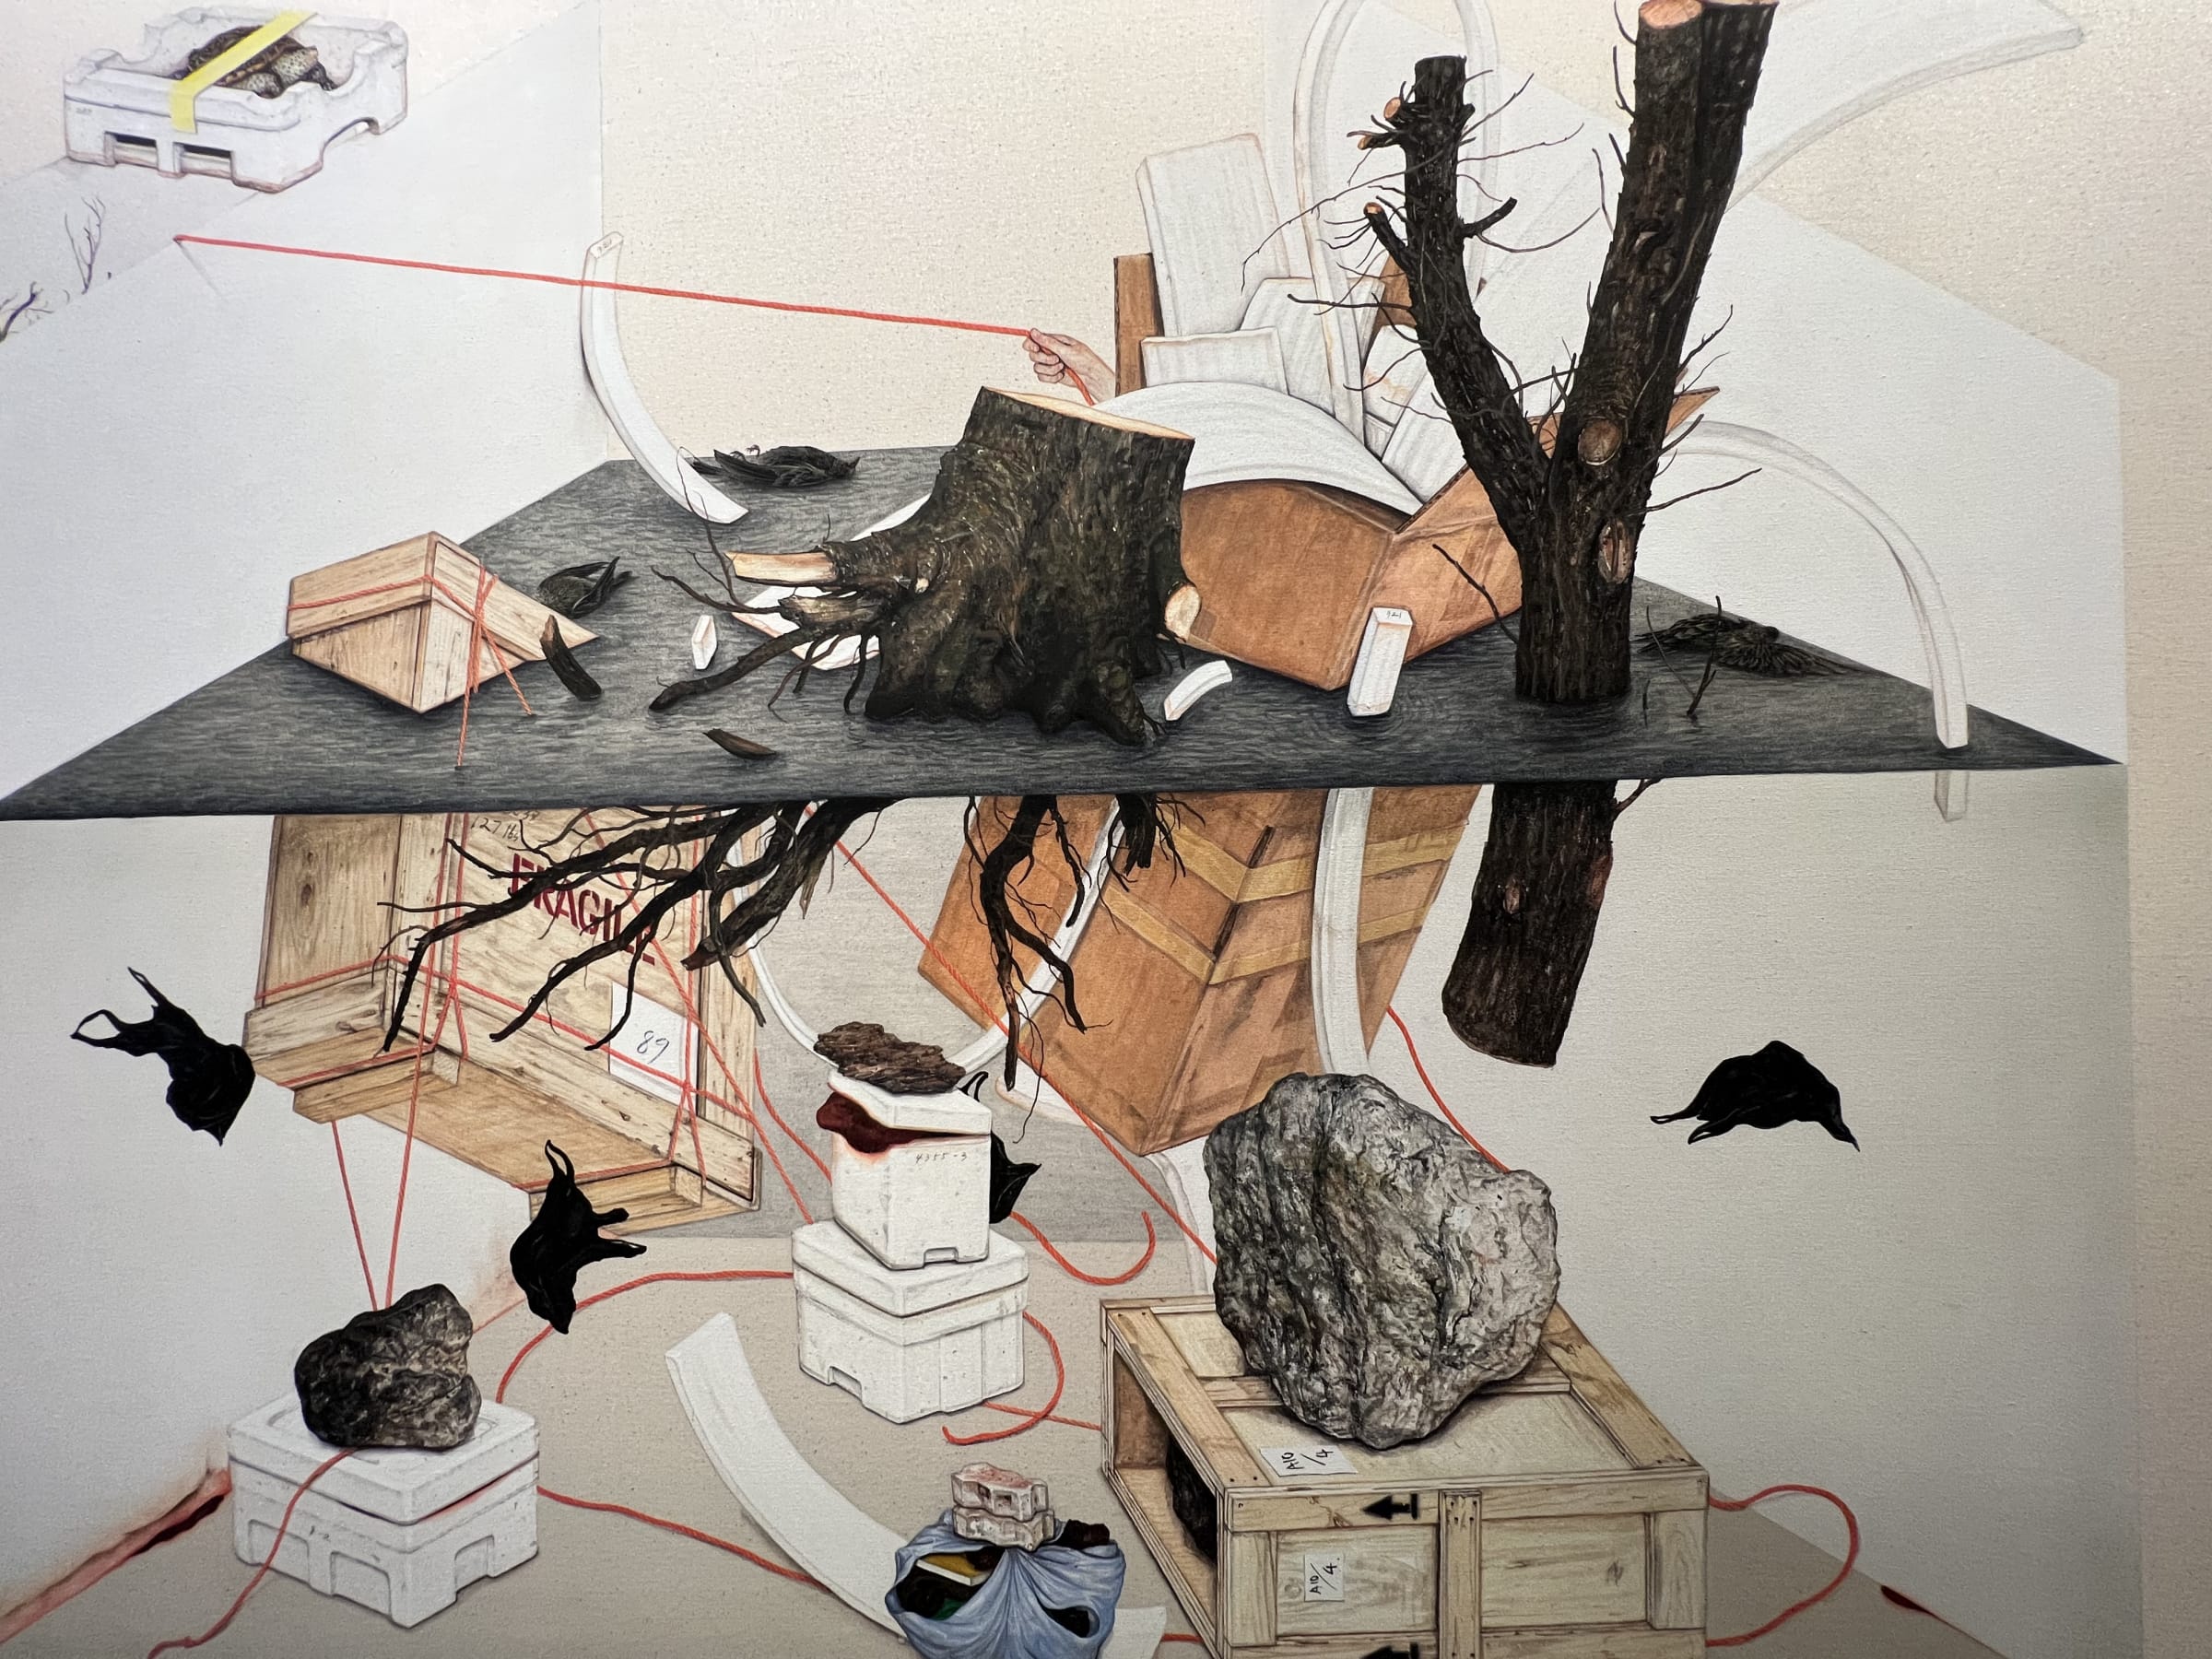 [Exhibition] LEE Jinju: Confined Composition Part 1 | Arario Gallery